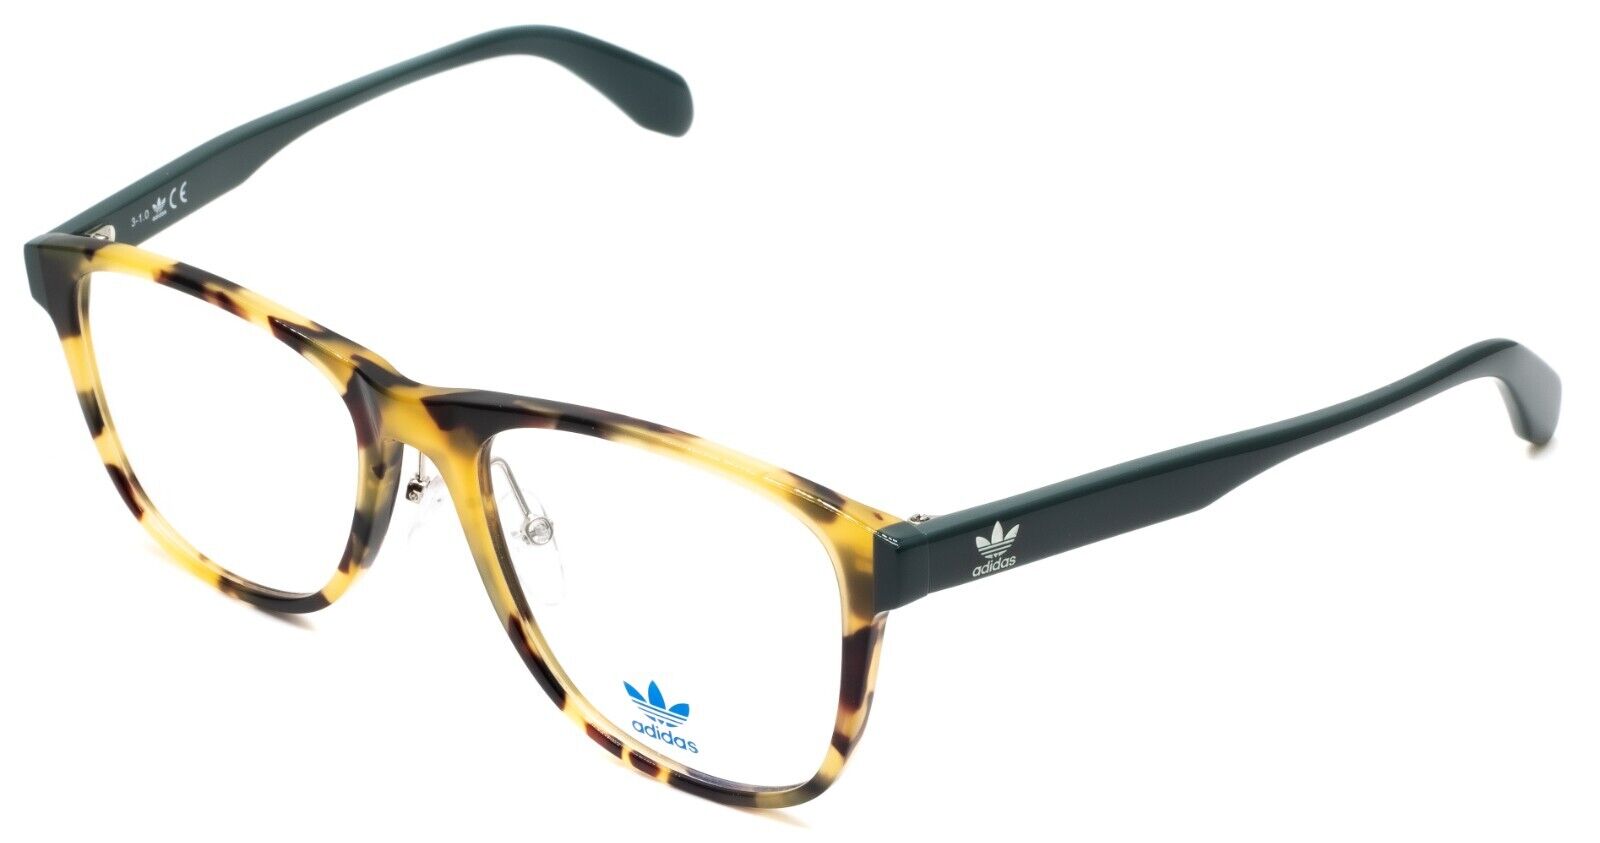 Quejar No de moda Tierra ADIDAS OR5002-H 055 55mm RX Optical Glasses Frames Eyewear Eyeglasses - New  - GGV Eyewear